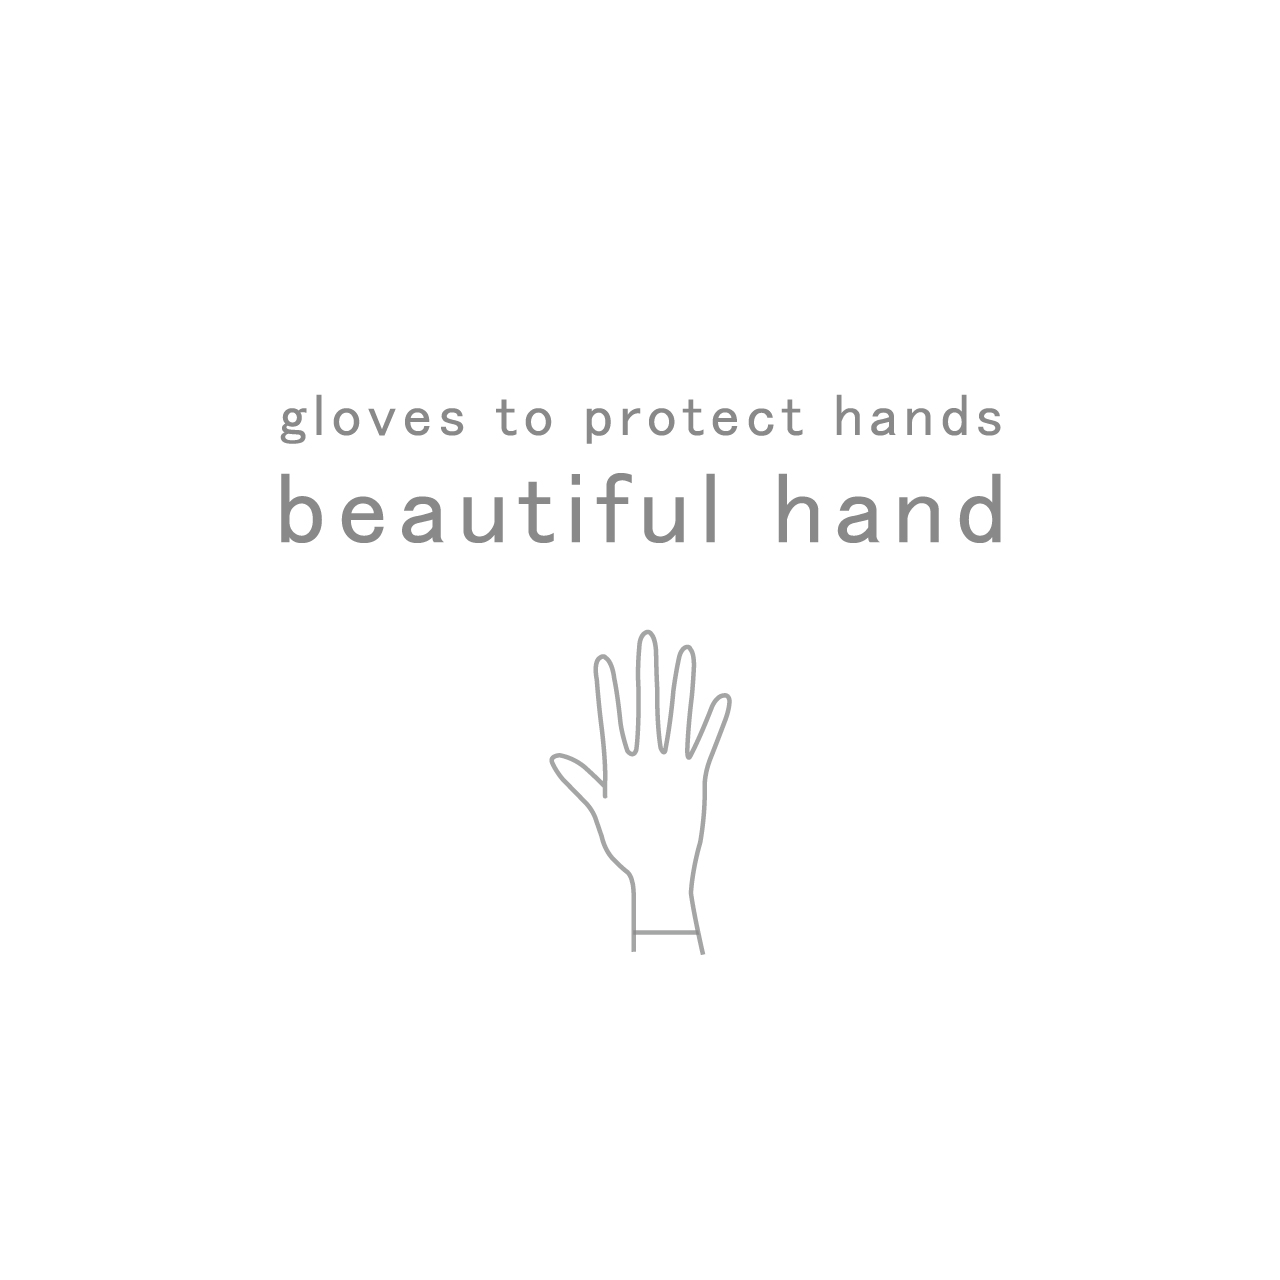 beautiful hand series　 “ 抗菌 ” から “ 制菌 ”へ。